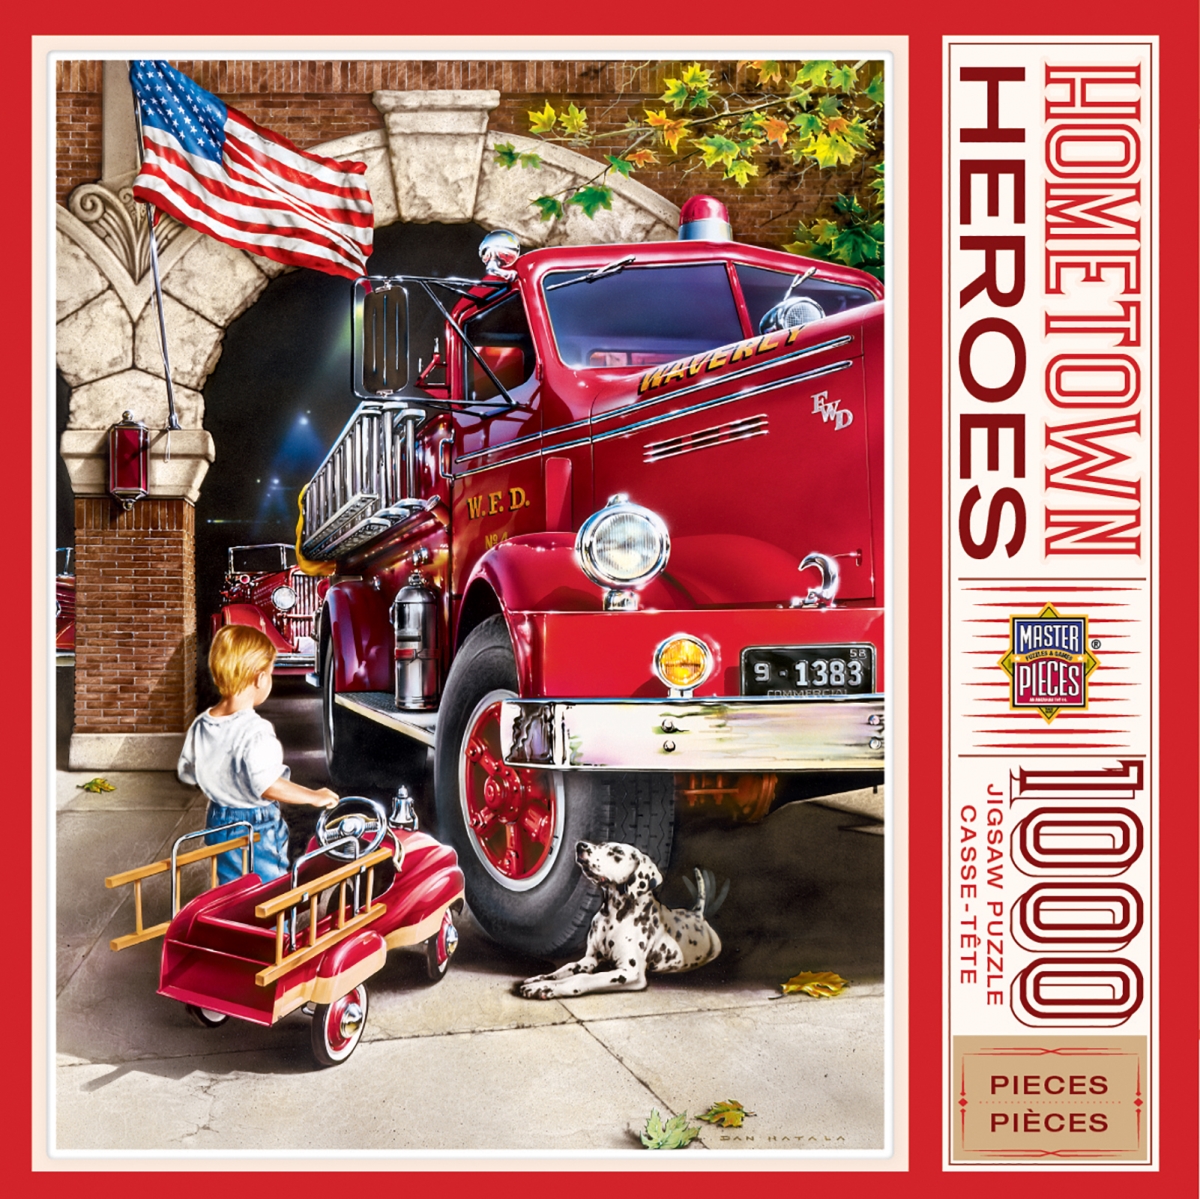 71630 19.25 X 26.75 In. Dan Hatala Hometown Heroes Firehouse Dreams Jigsaw Puzzle -1000 Piece